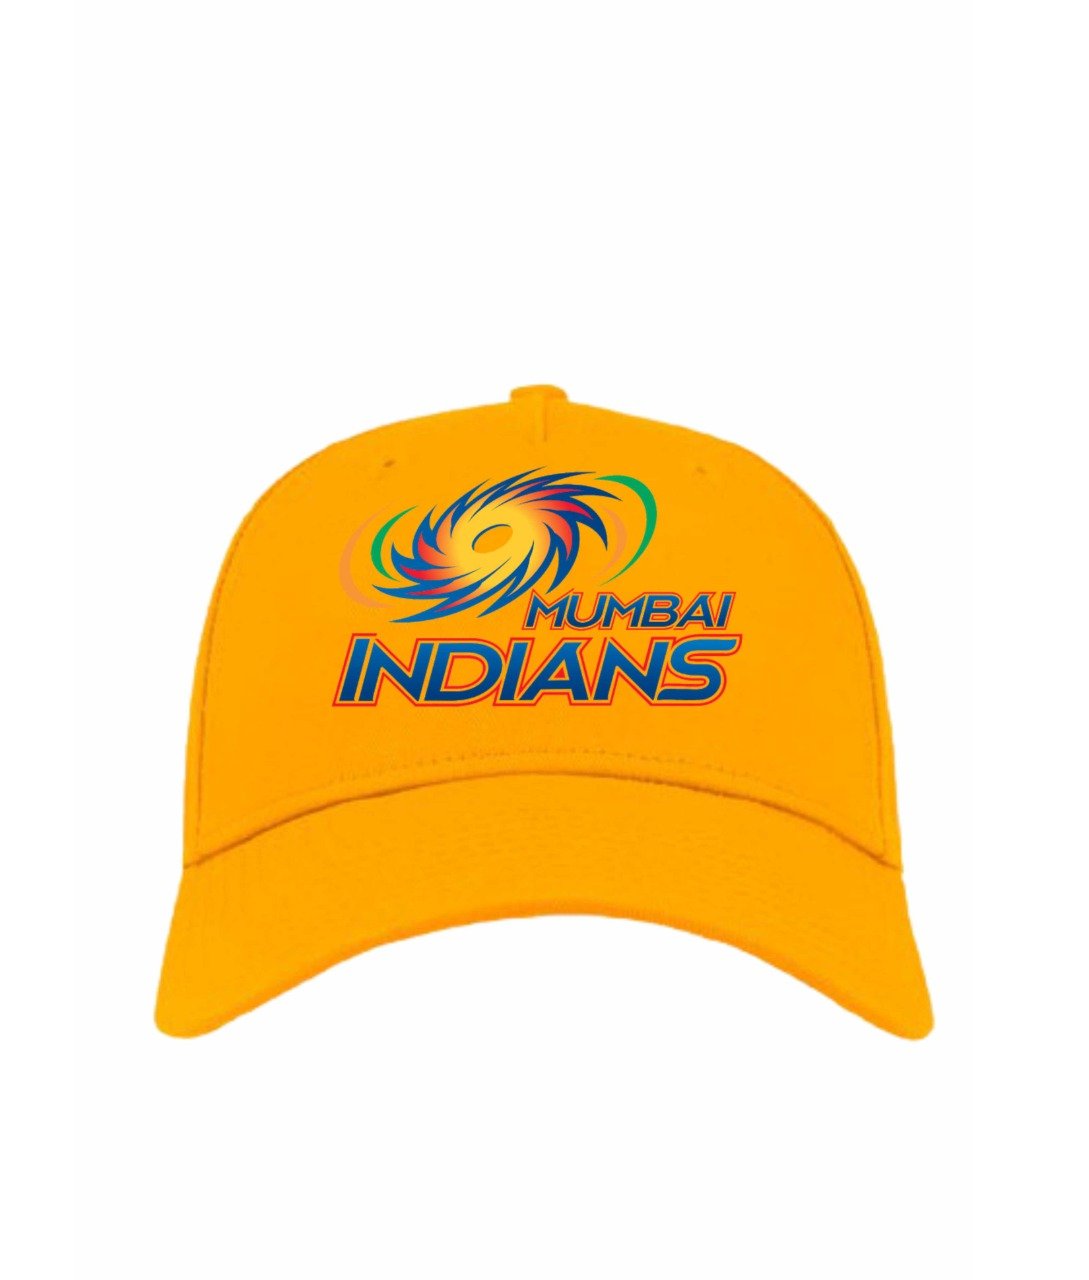 Mumbai Indians Printed IPL Cap Yellow